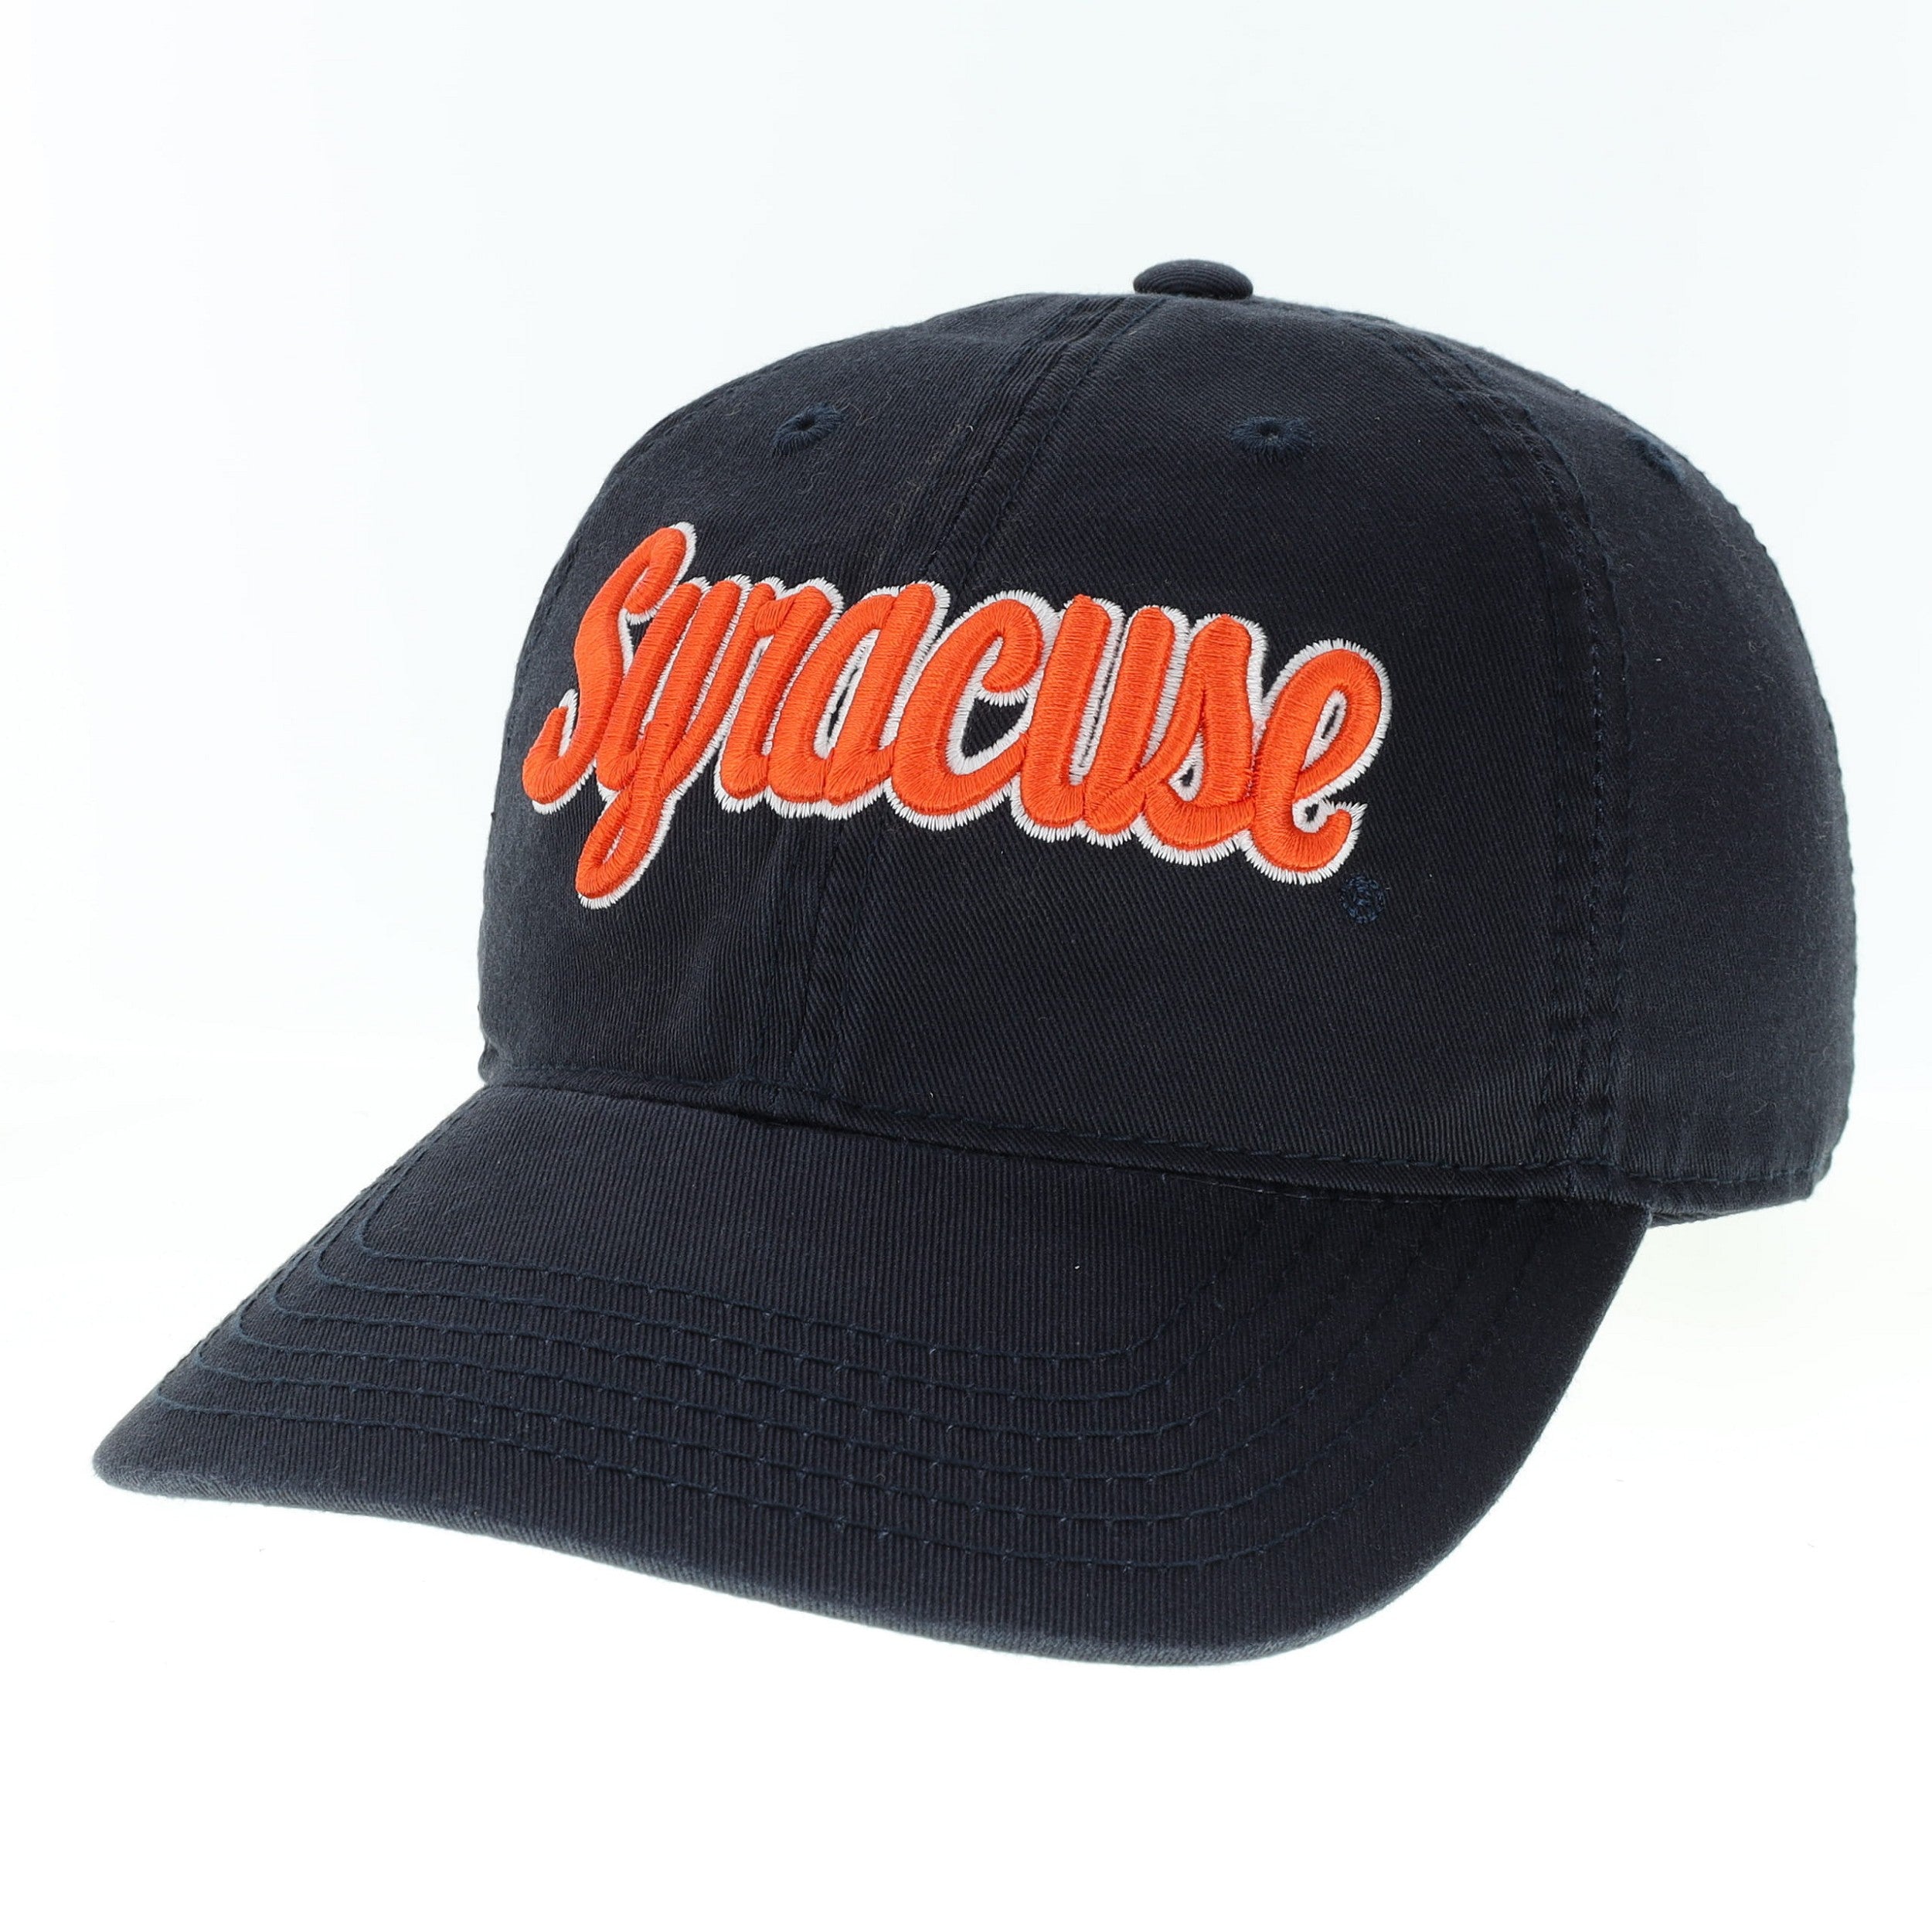 New Era 9TWENTY Syracuse Yankees Hat White